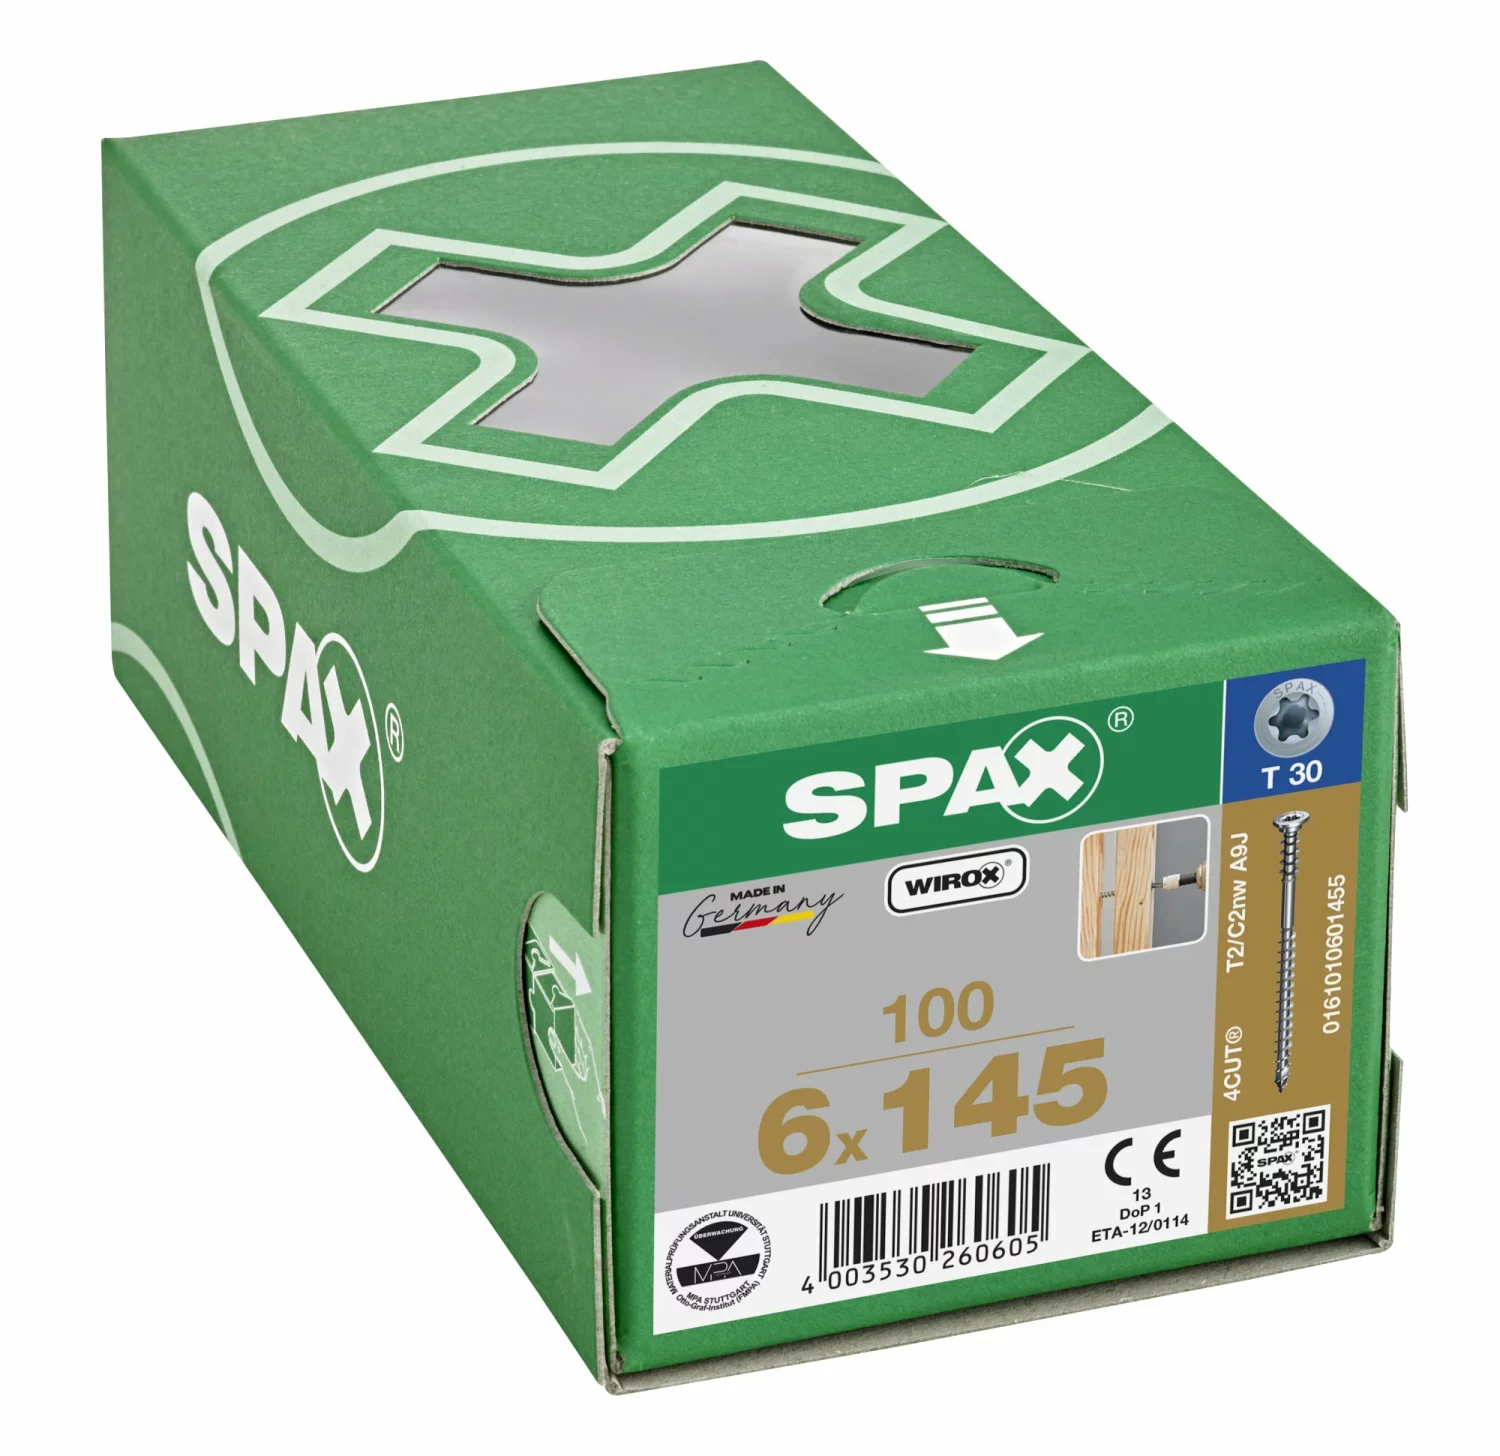 SPAX 161010601455 - Vis de réglage, 6 x 145mm, 100 pièces, tête plate, T-STAR plus T30, rainures de retenue, 4CUT, WIROX --image